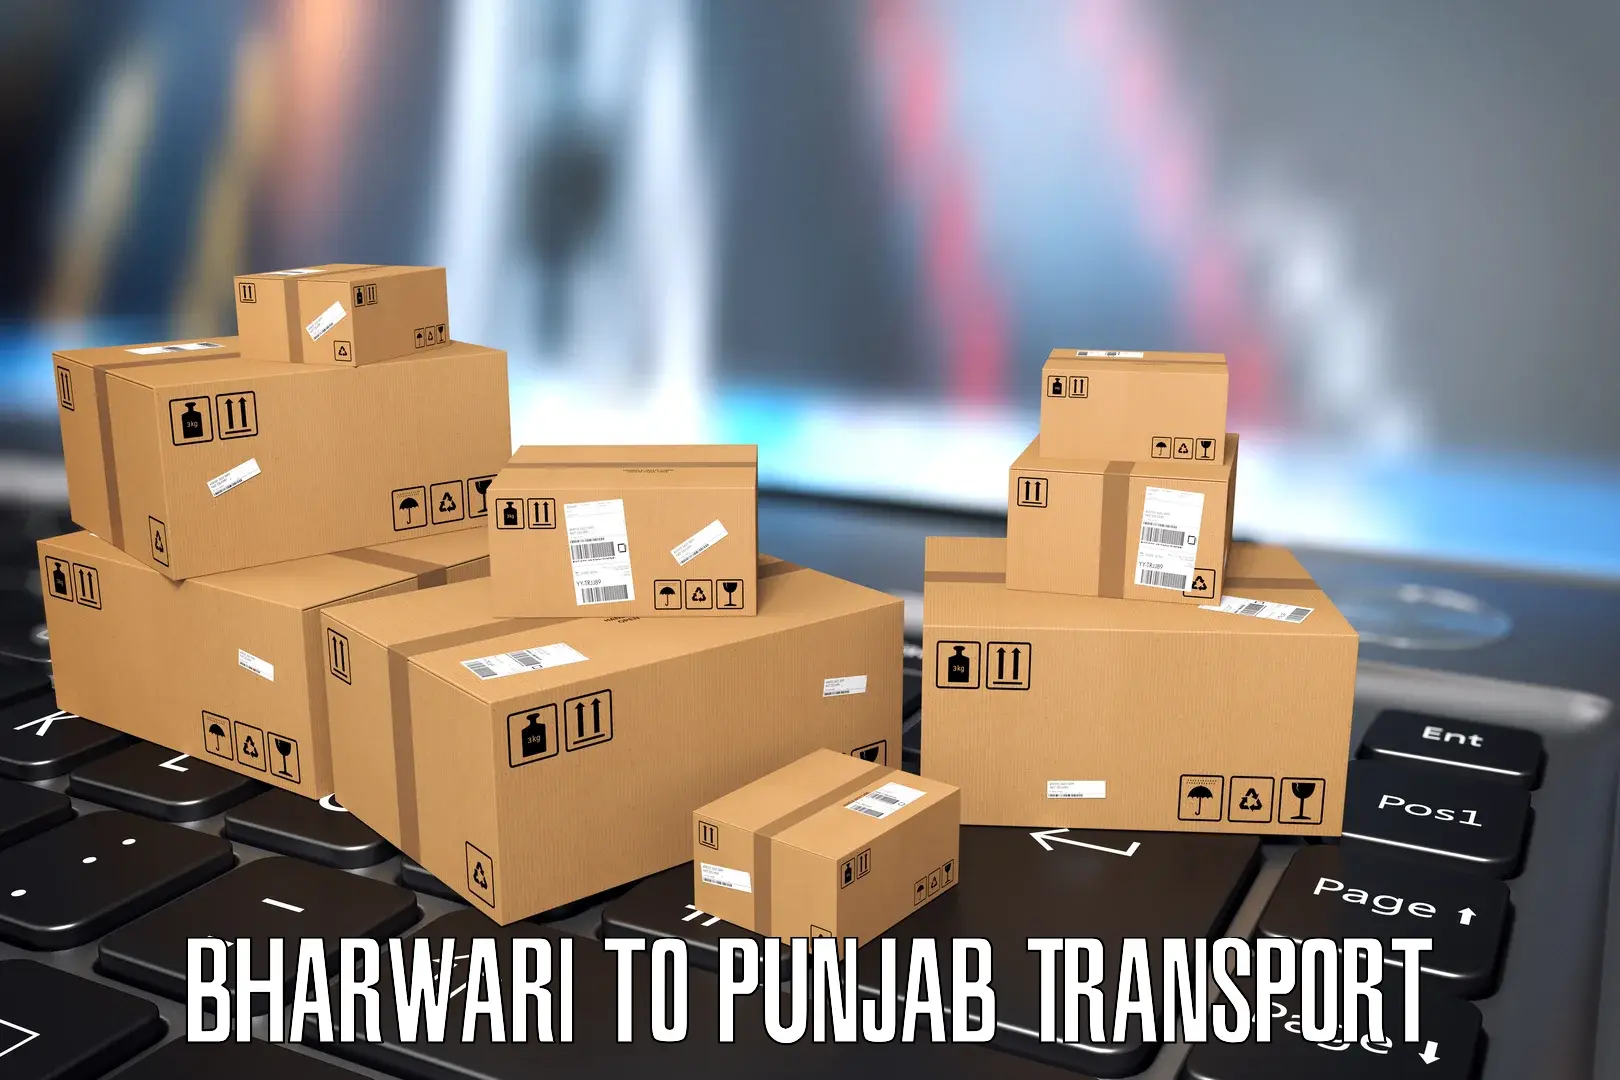 Daily transport service Bharwari to Punjab